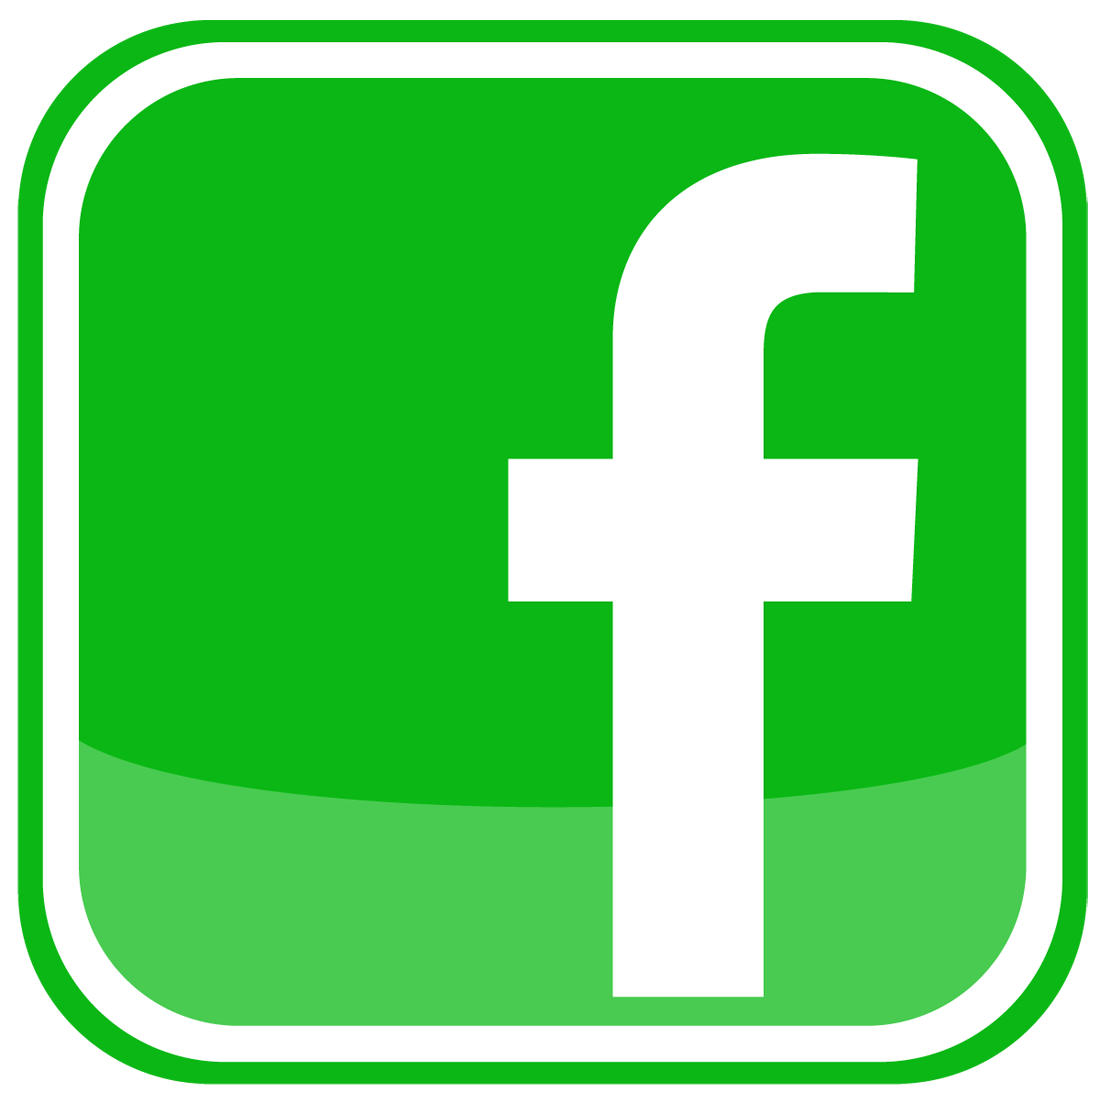 Green Facebook Logo - Facebook Icon Logo Png Green